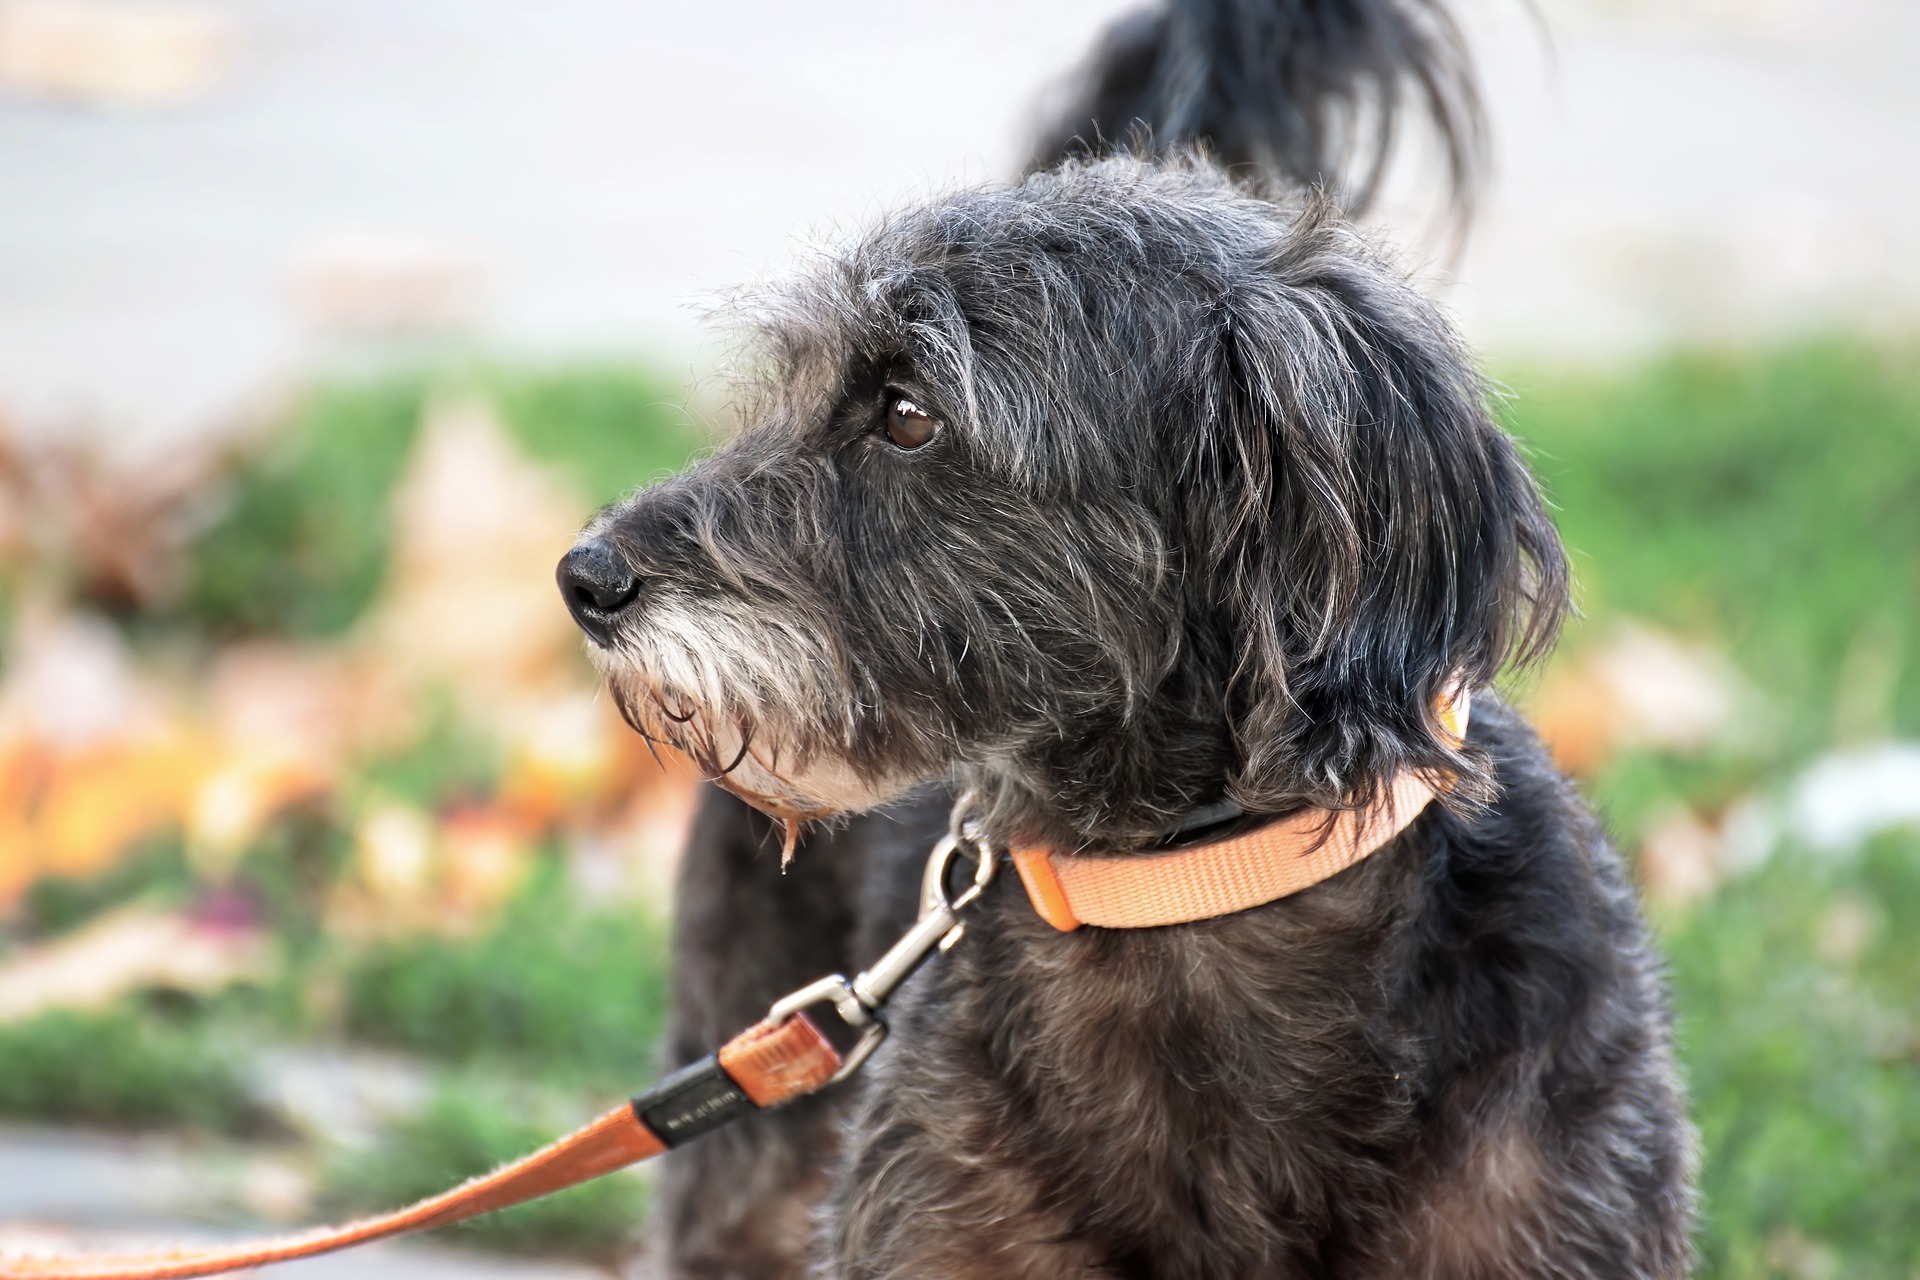 Sai scegliere il collare più adatto per il tuo cane Fido? Ecco alcuni consigli degli esperti